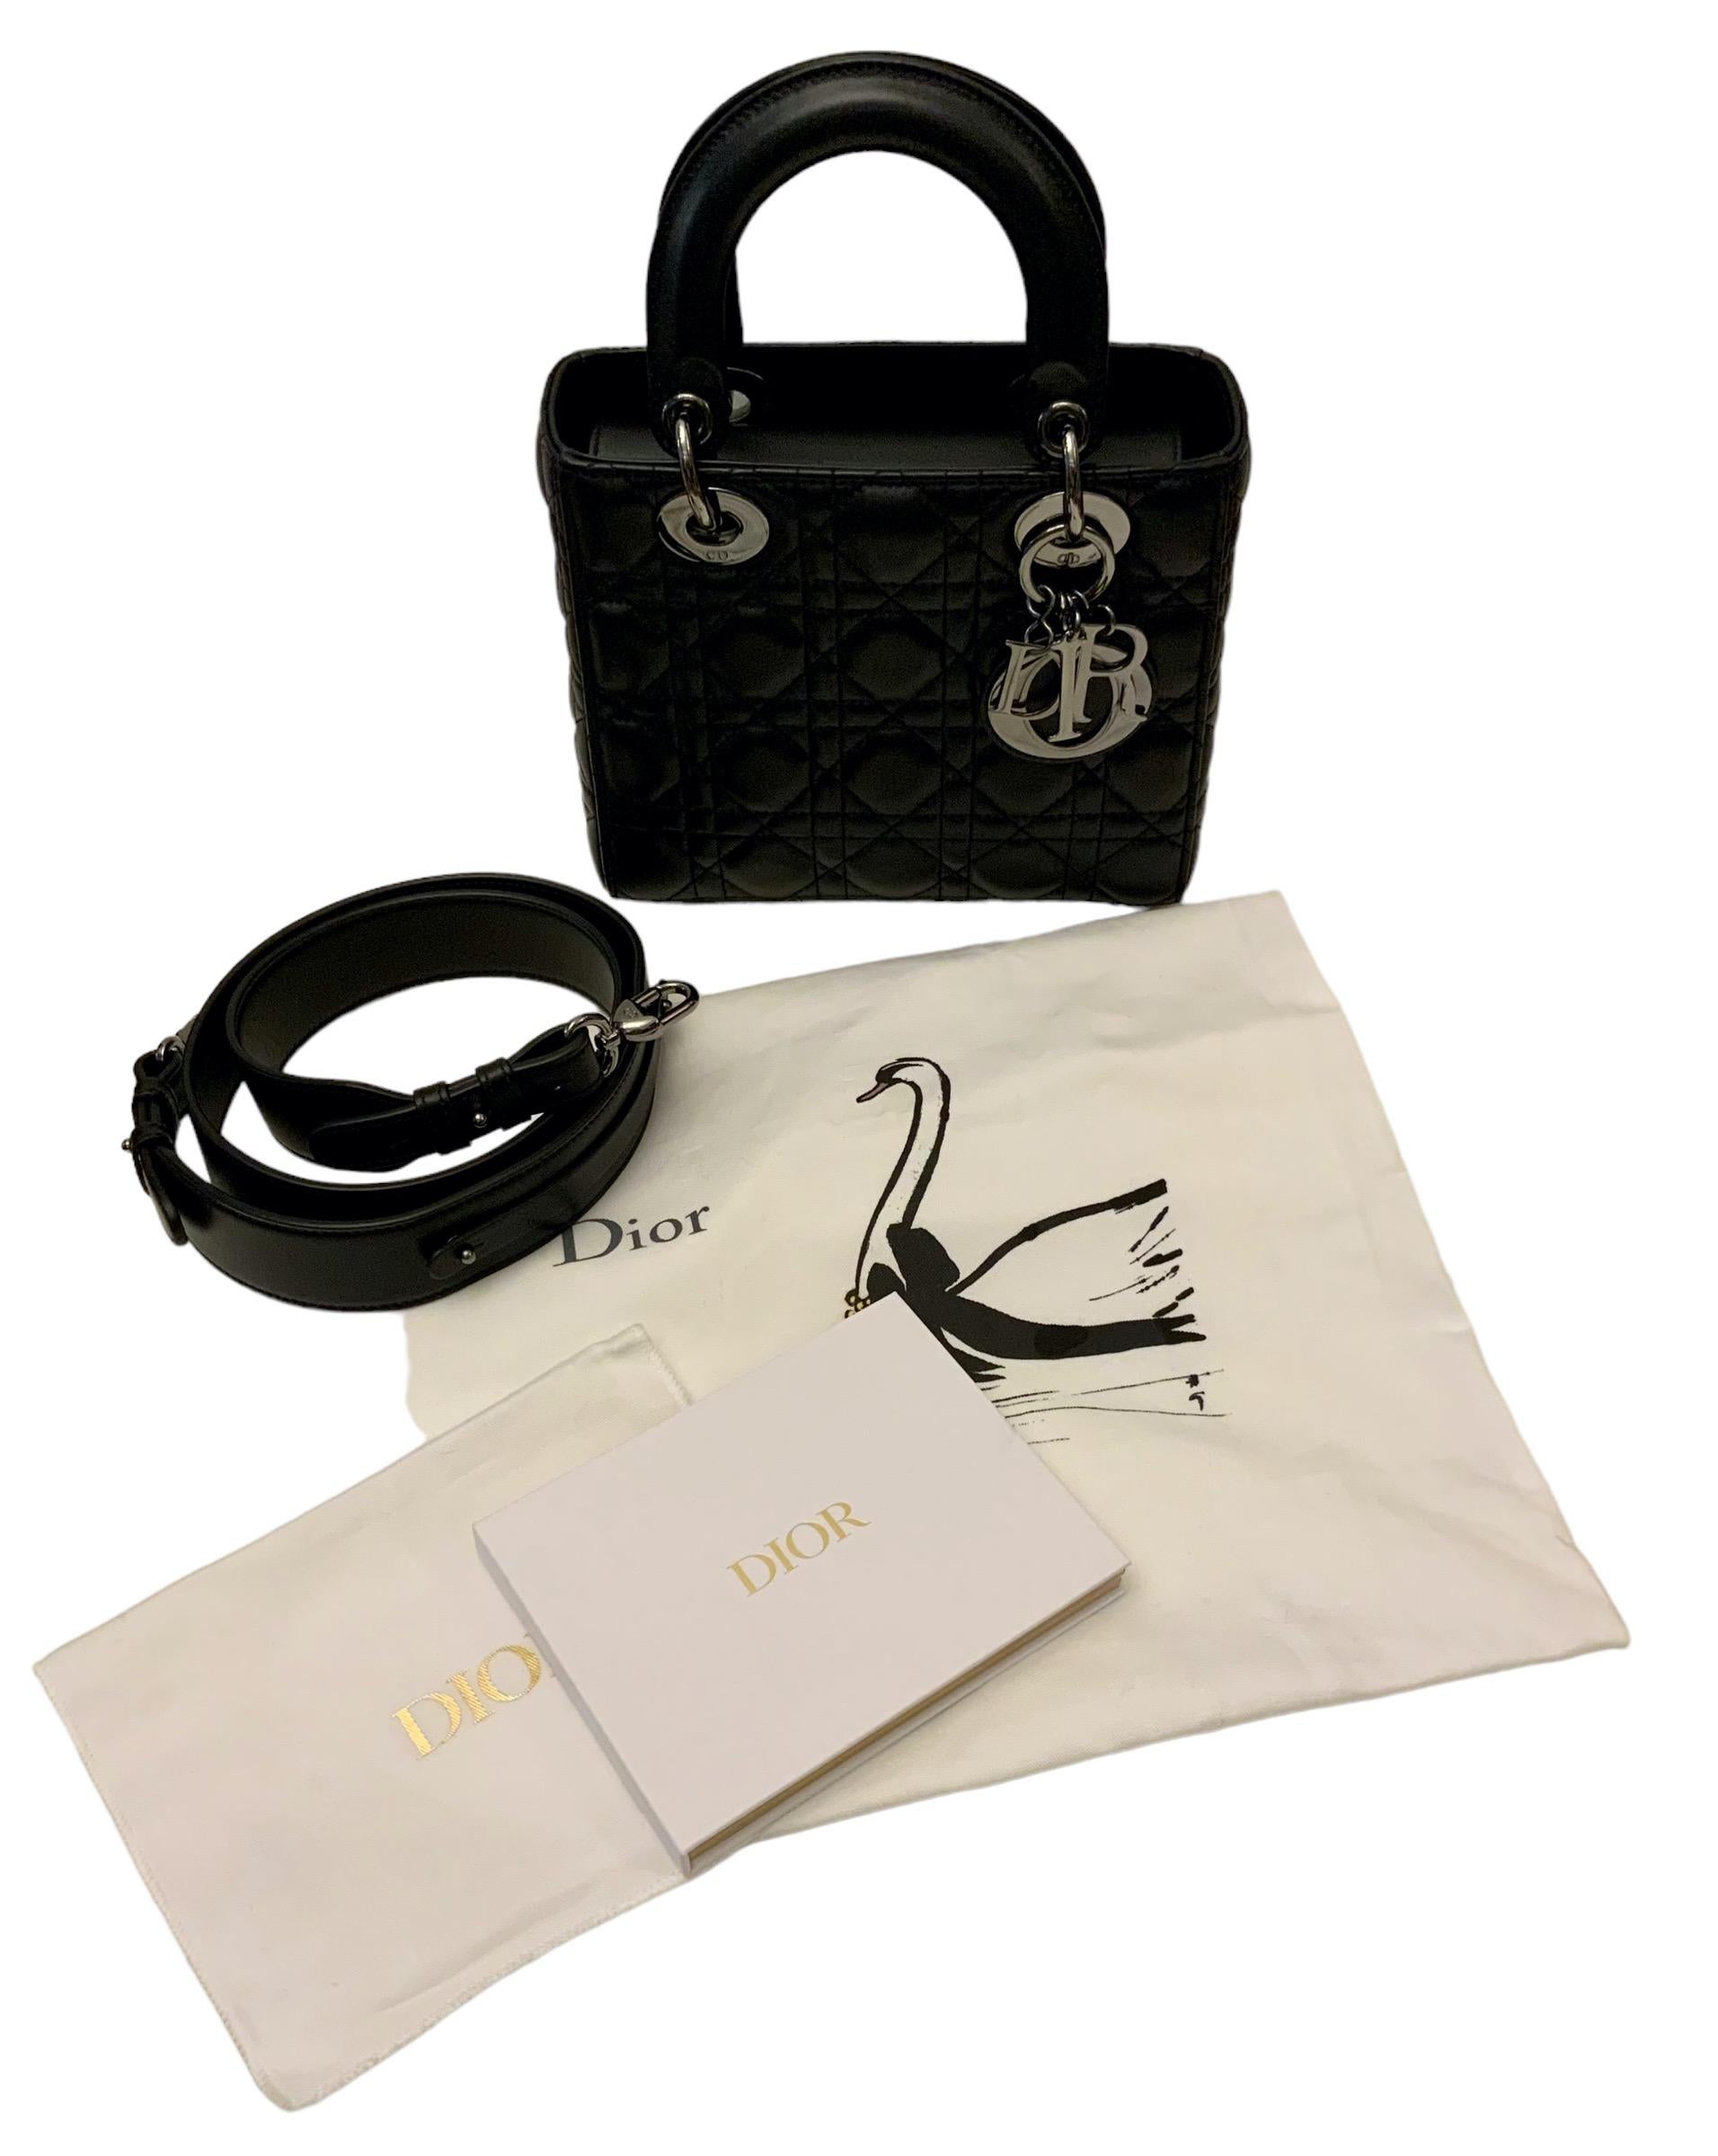 Dior Burgundy Cannage Leather Small Lady Dior My ABCDior Bag | eBay